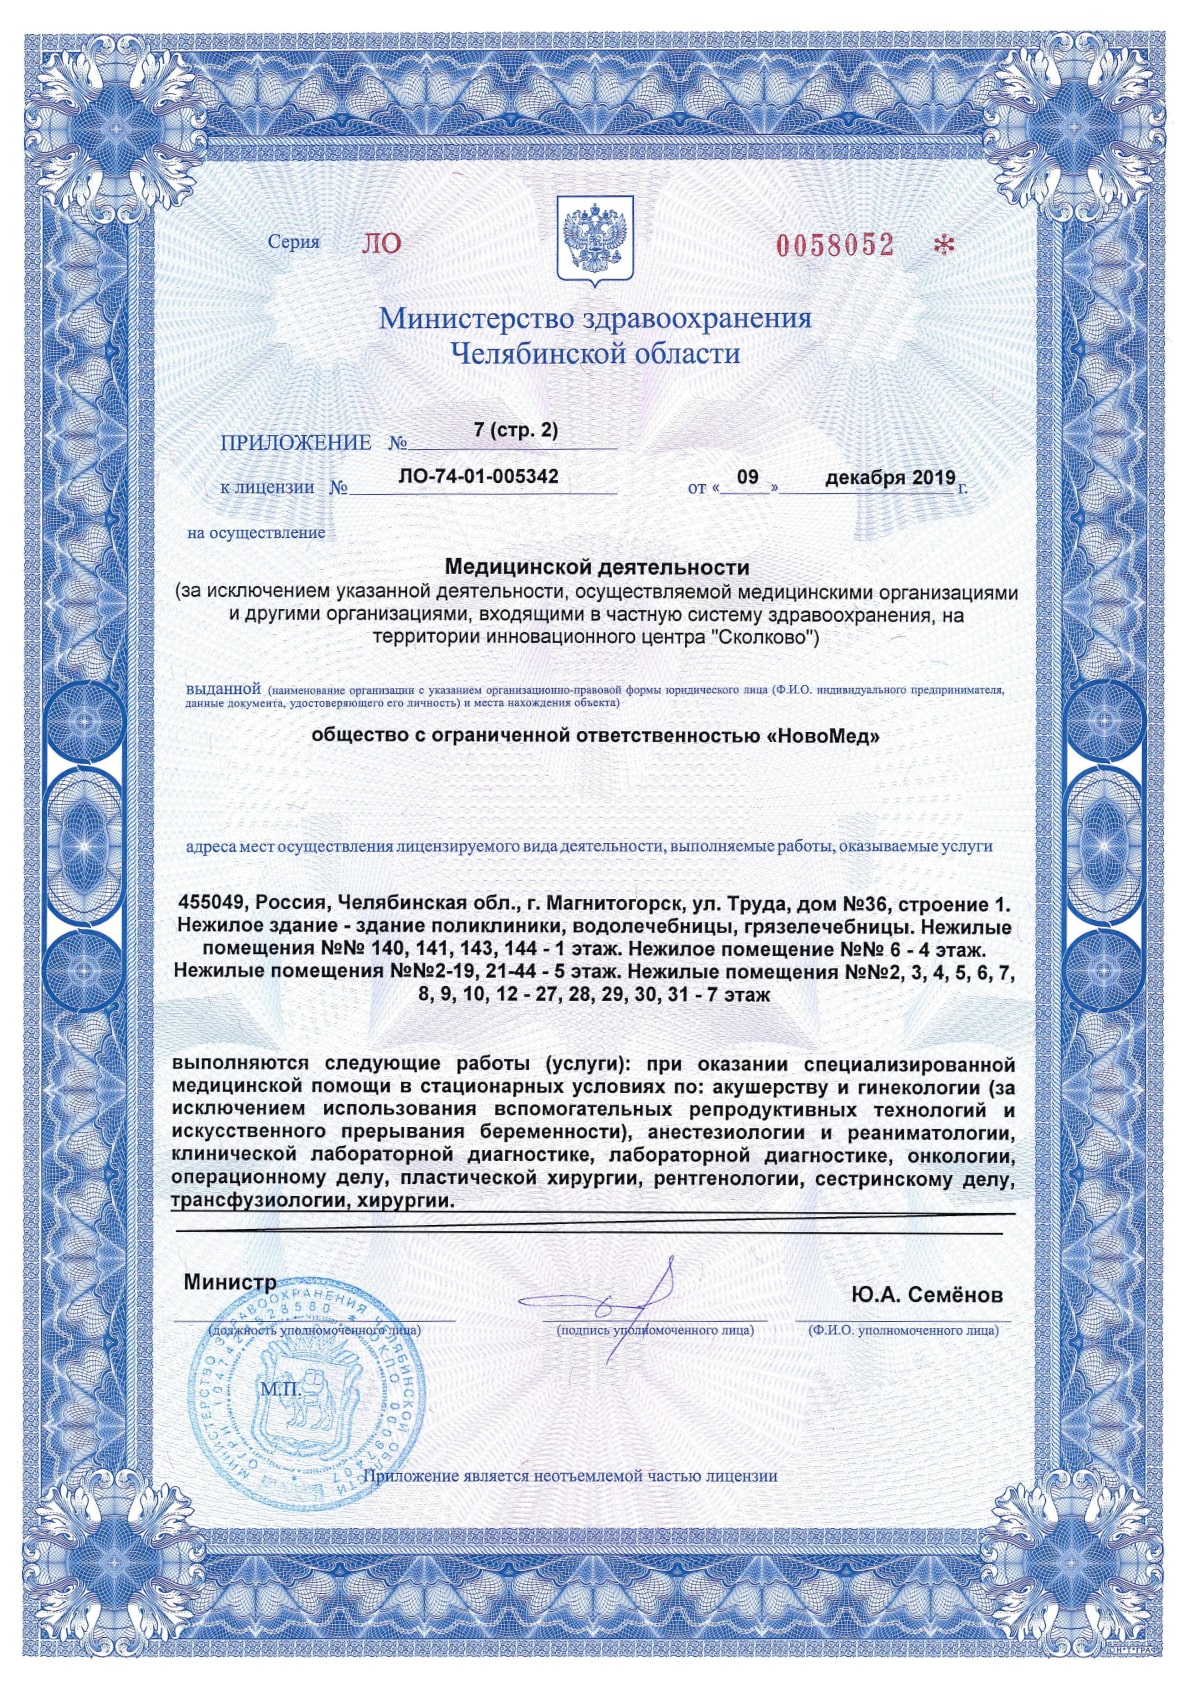 Приложение №7 к лицензии ЛО-74-01-005342, лист 2